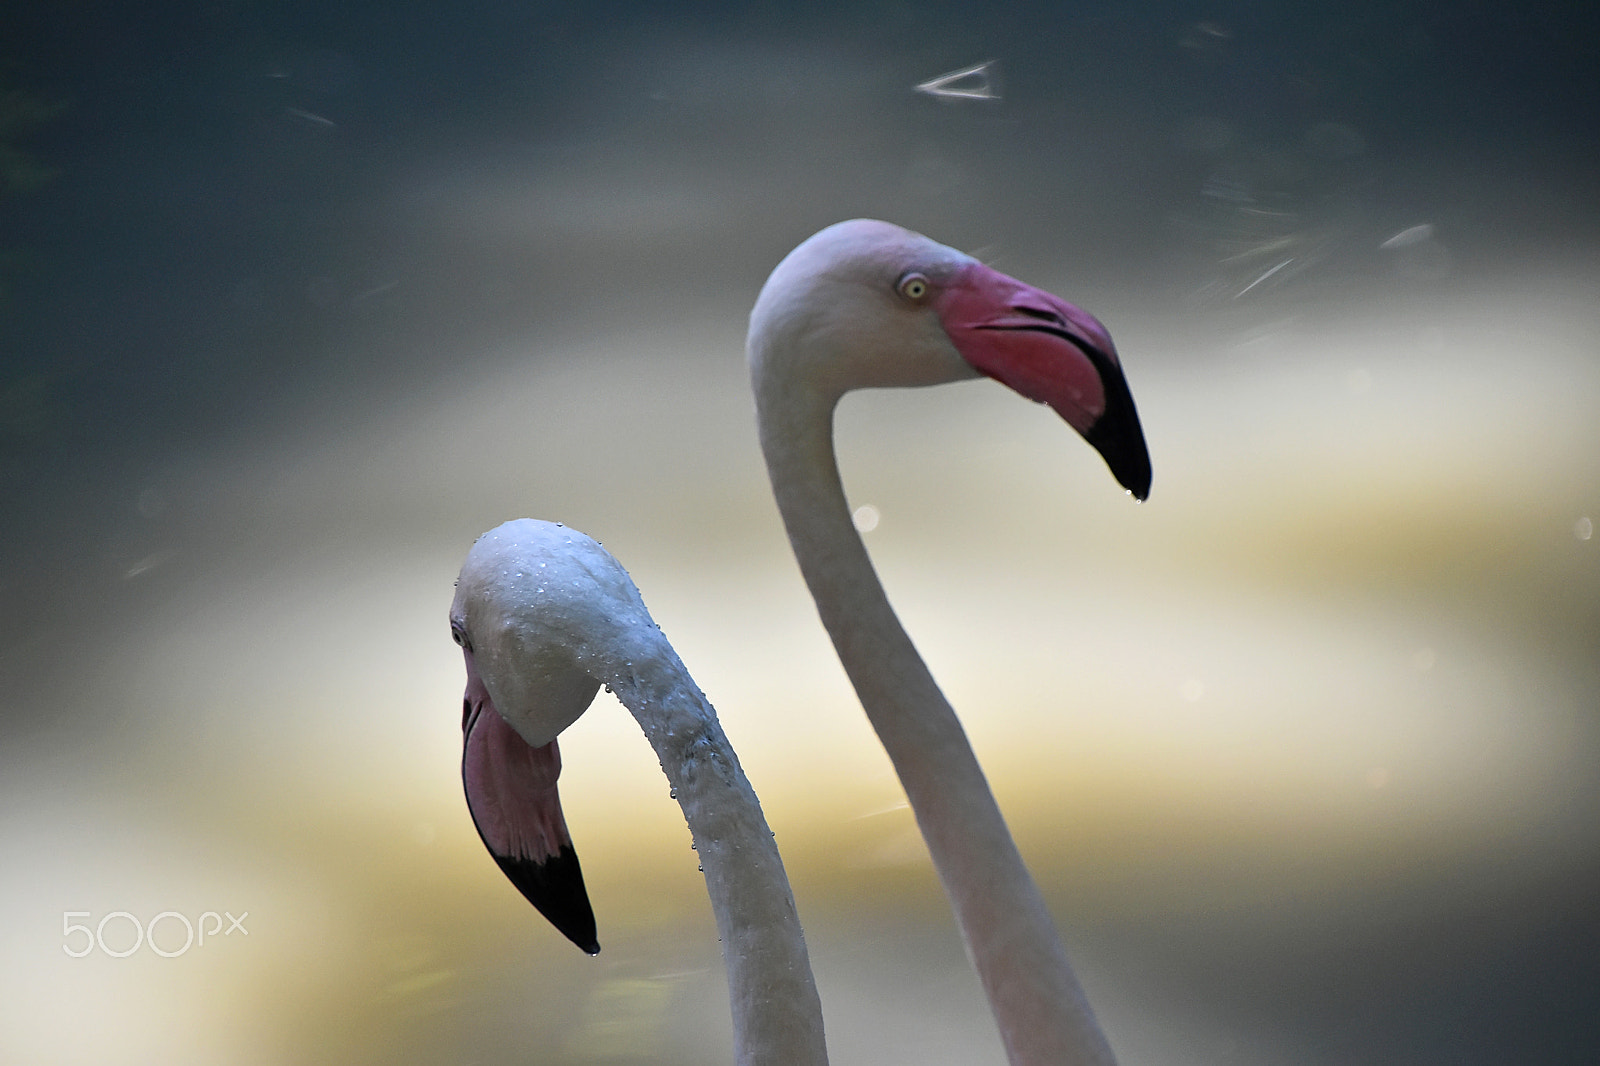 Nikon D5500 + Nikon AF-S DX Nikkor 18-300mm F3.5-6.3G ED VR sample photo. Two flamingo birds over water photography